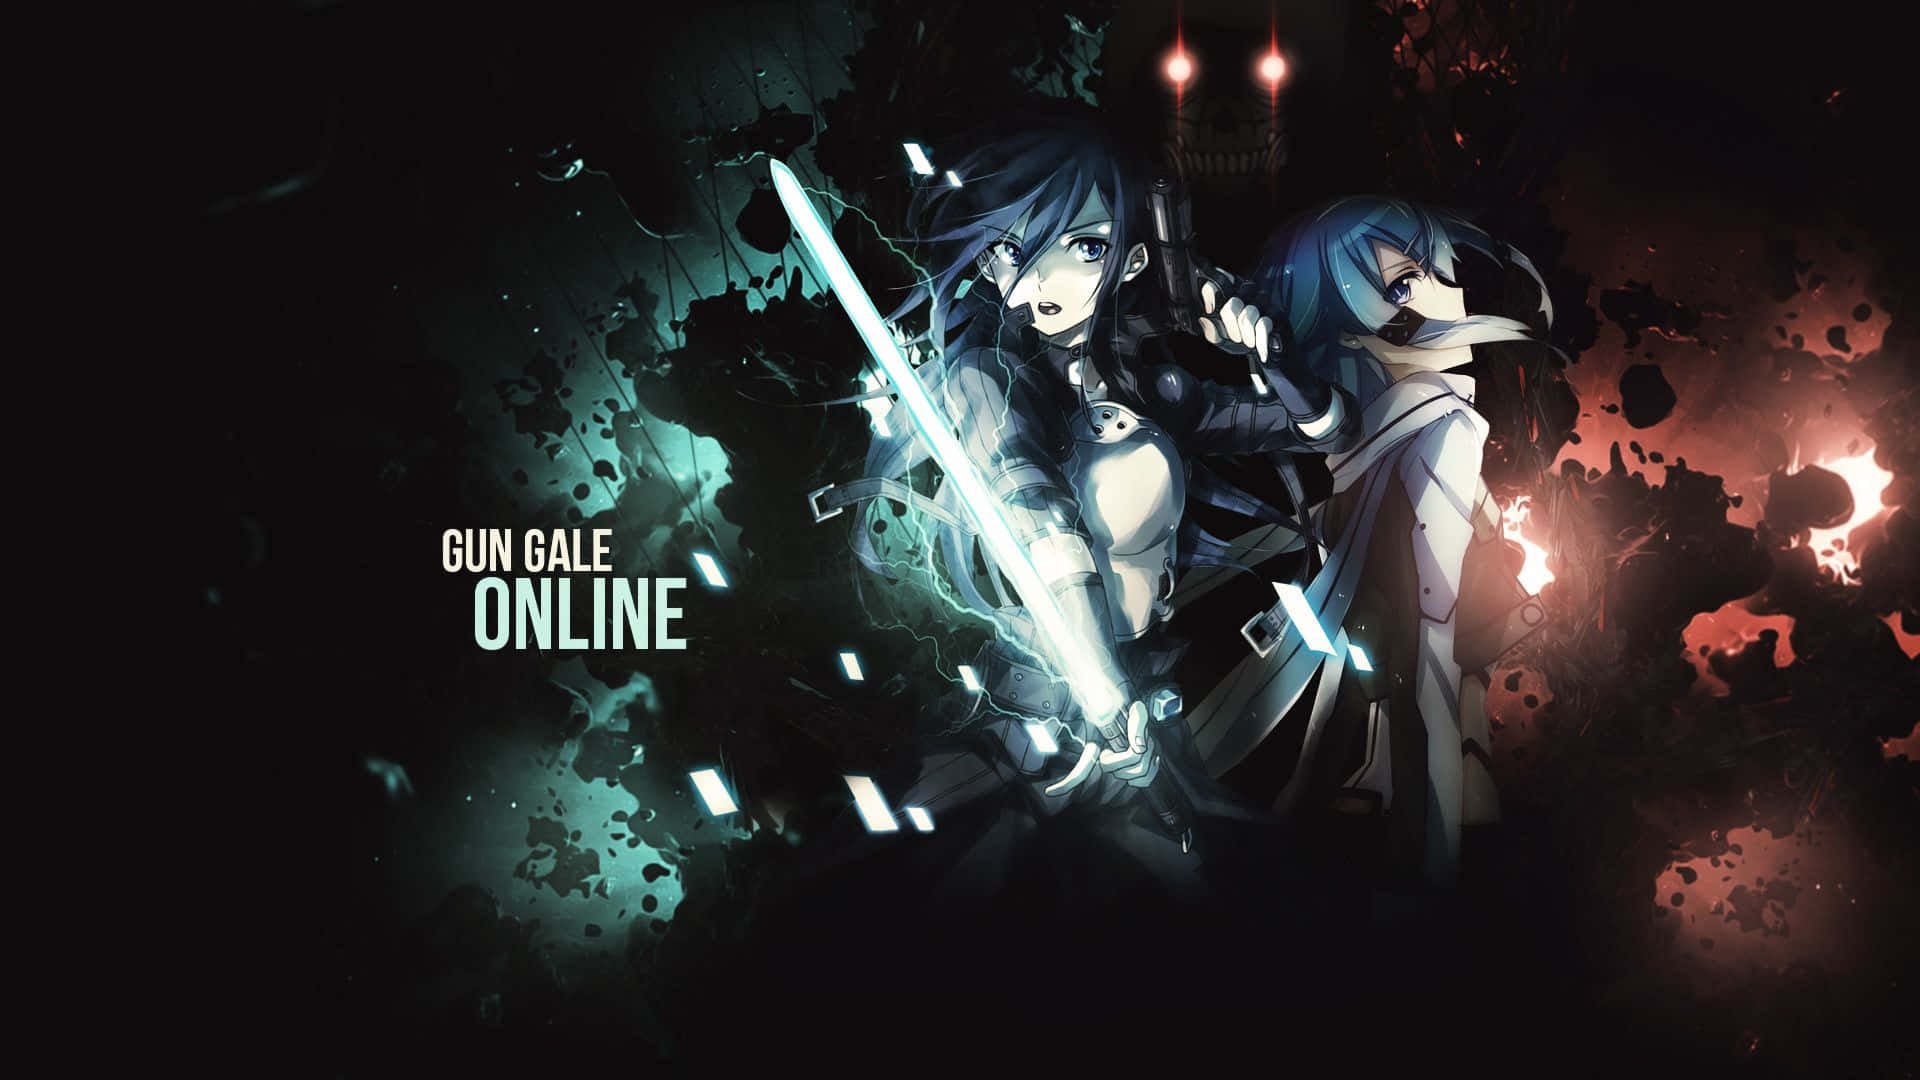 Asunaund Kirito, Zwei Mutige Krieger In Der Virtuellen Welt Von Sword Art Online.